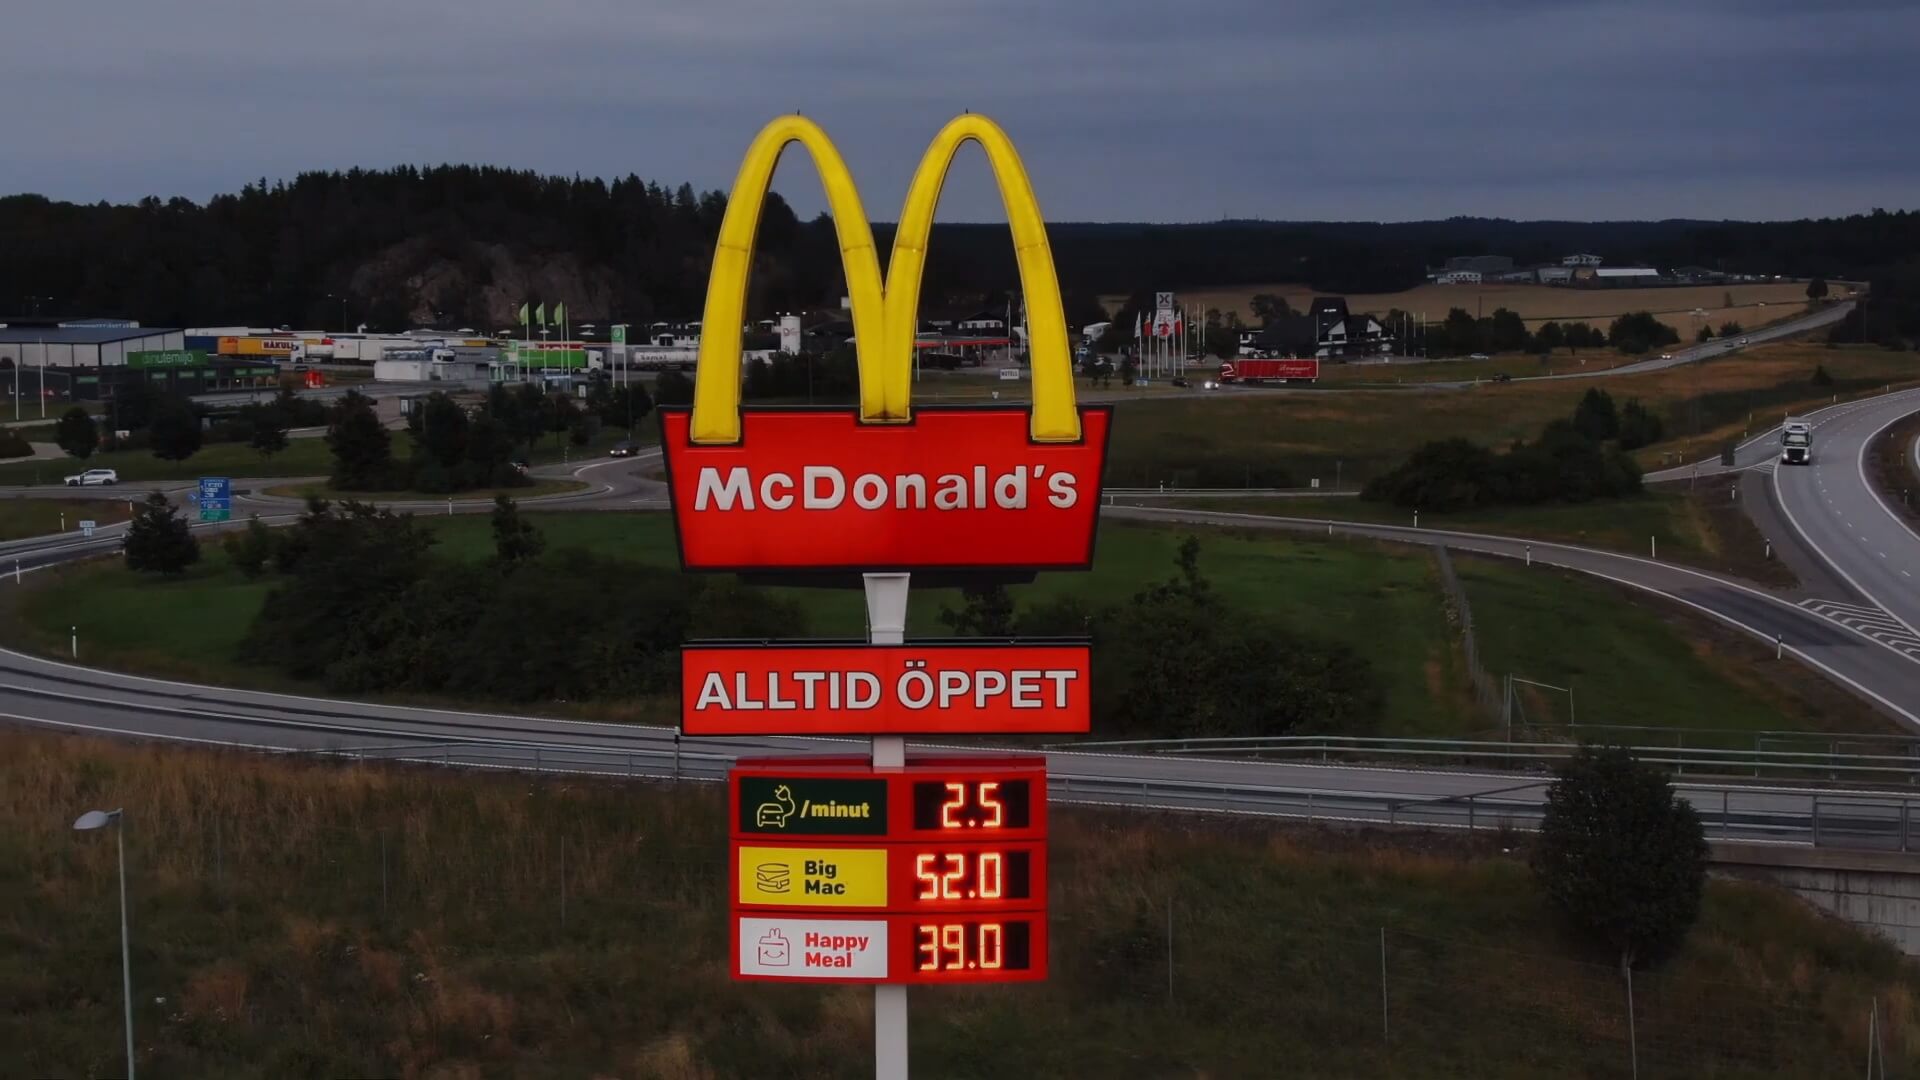 Указатель McDonald's показывает текущую стоимость зарядки, а также цену на Big Mac и Happy Meal